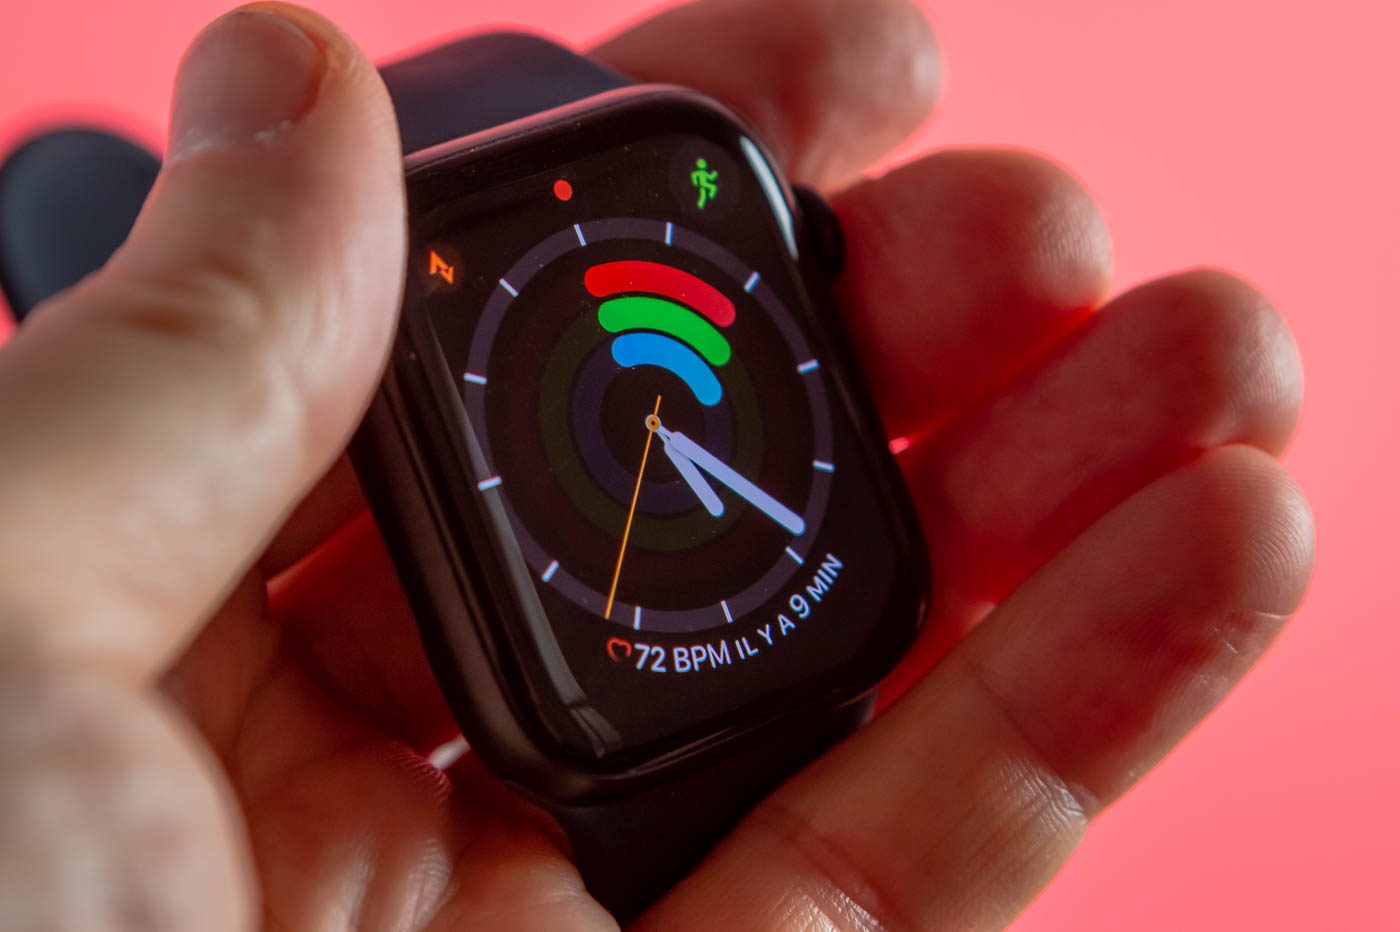 Les Apple Watch pourraient bientôt être équipées d’une caméra intégrée